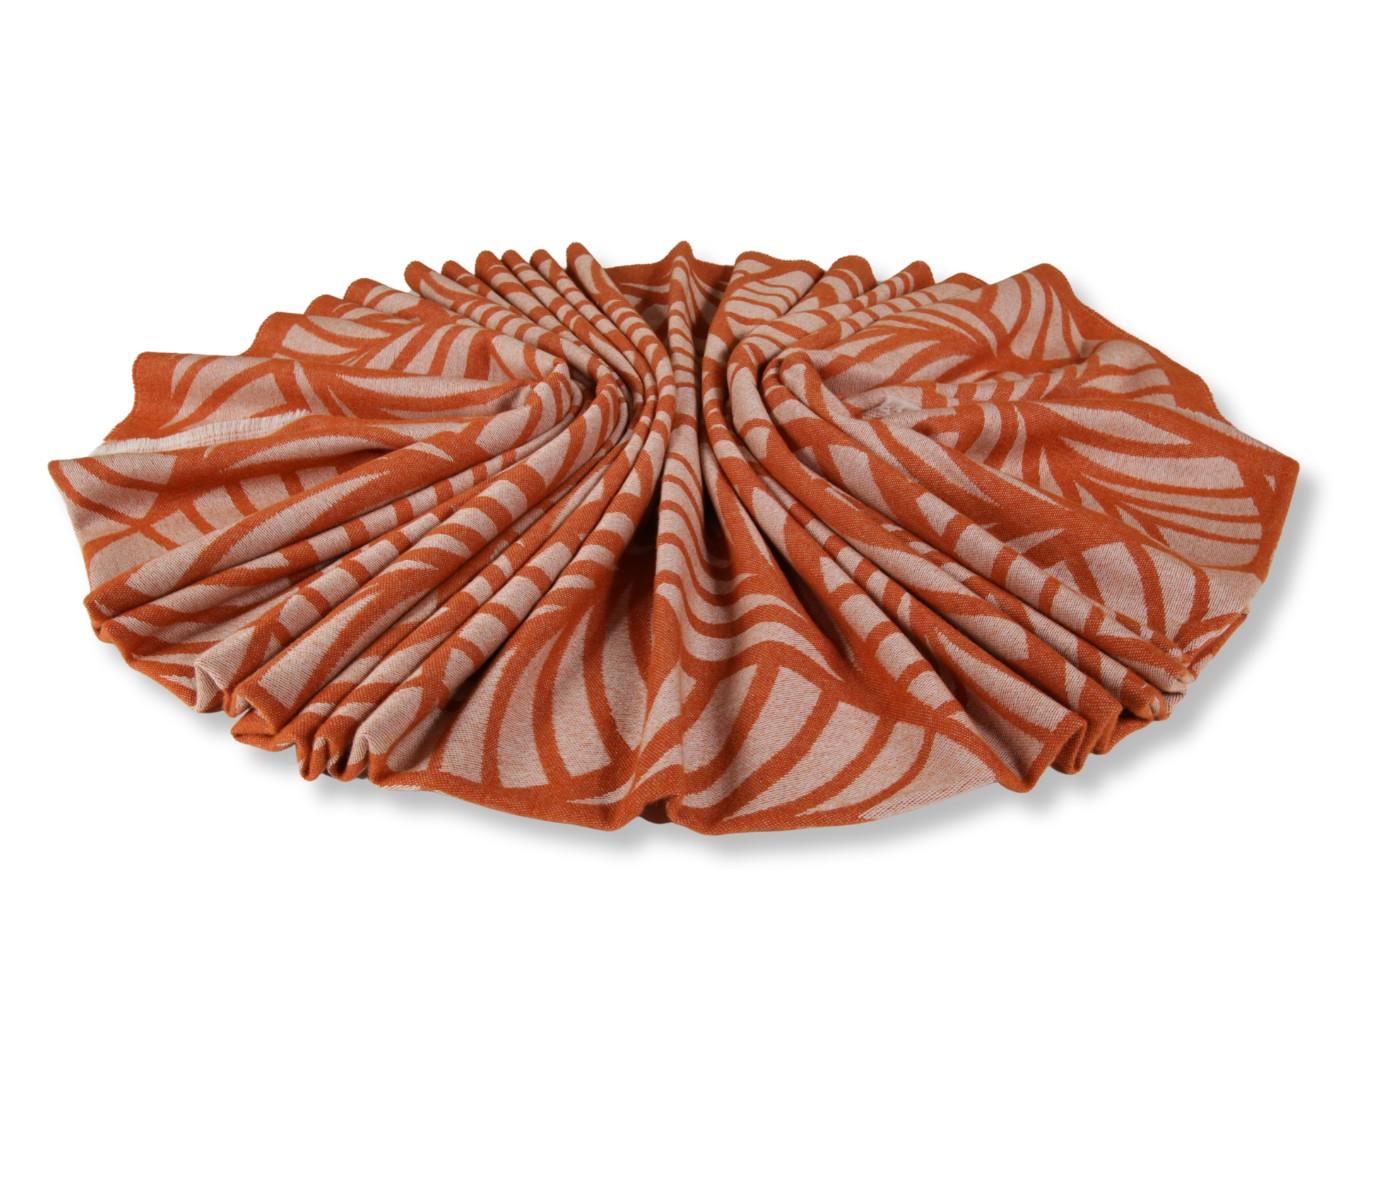 Eagle Products Wolldecke aus Schurwolle in orange, Motiv: Blätter, 135 x 220 cm